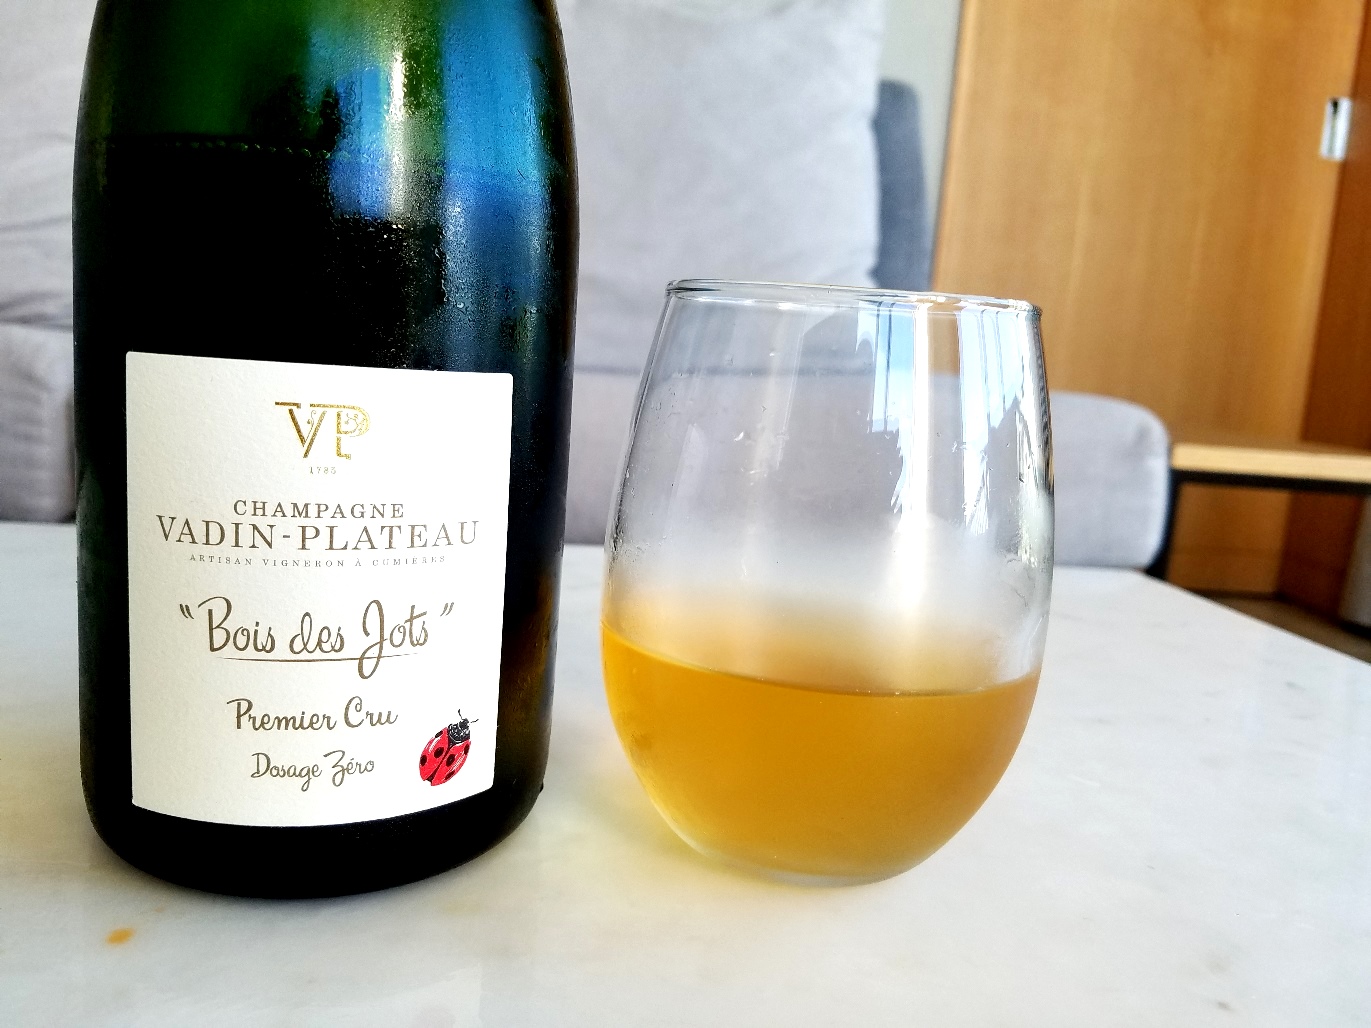 Vadin-Plateau, Bois des Jots Premier Cru Dosage Zero Champagne, France, Wine Casual